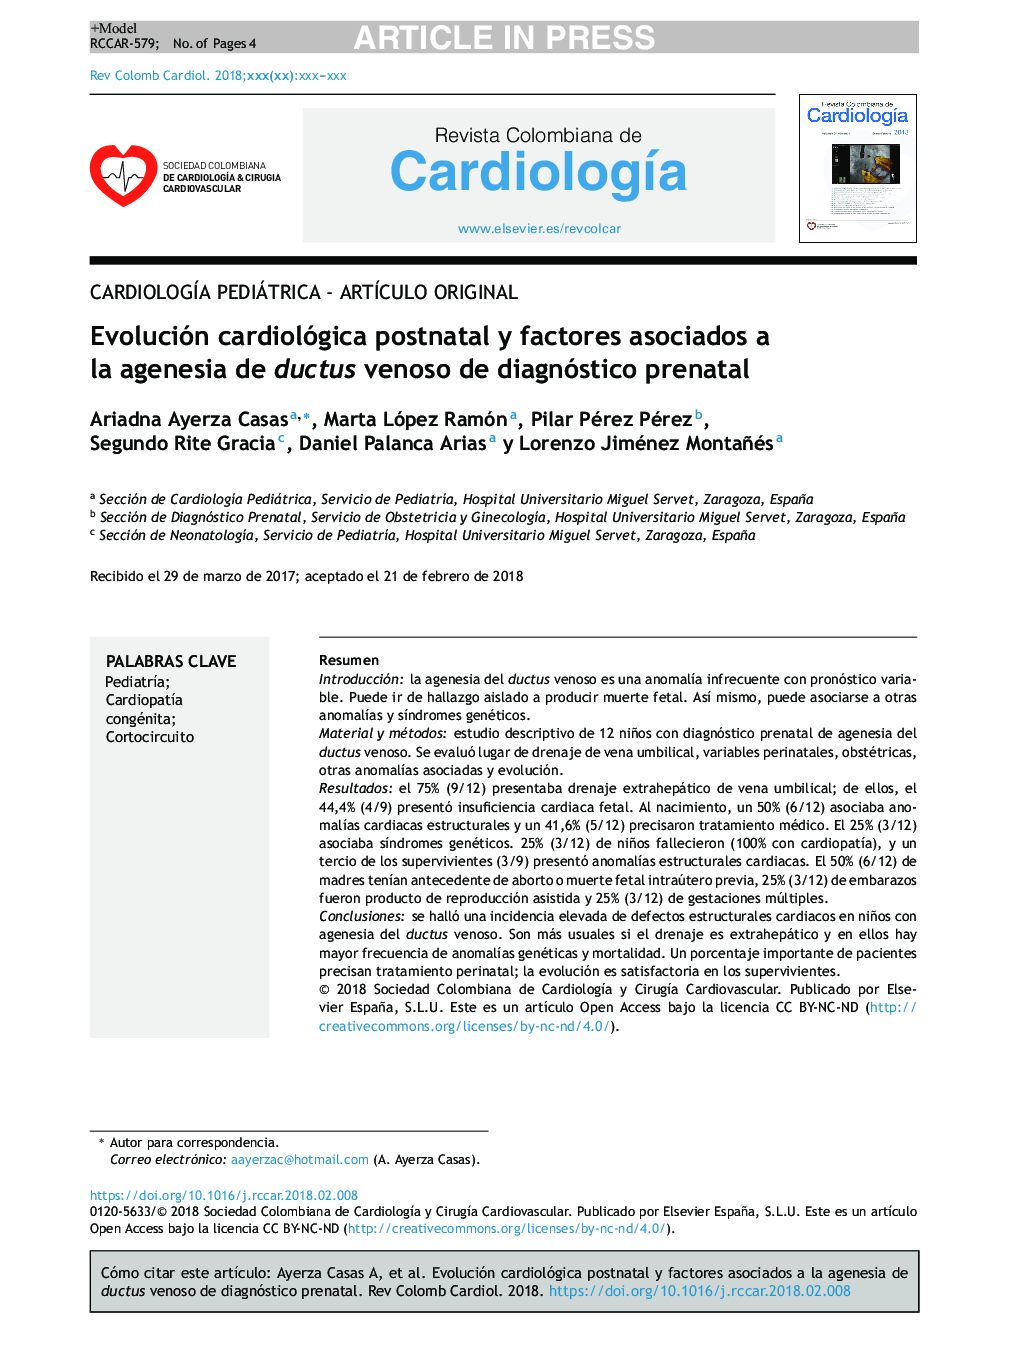 Evolución cardiológica postnatal y factores asociados a la agenesia de ductus venoso de diagnóstico prenatal